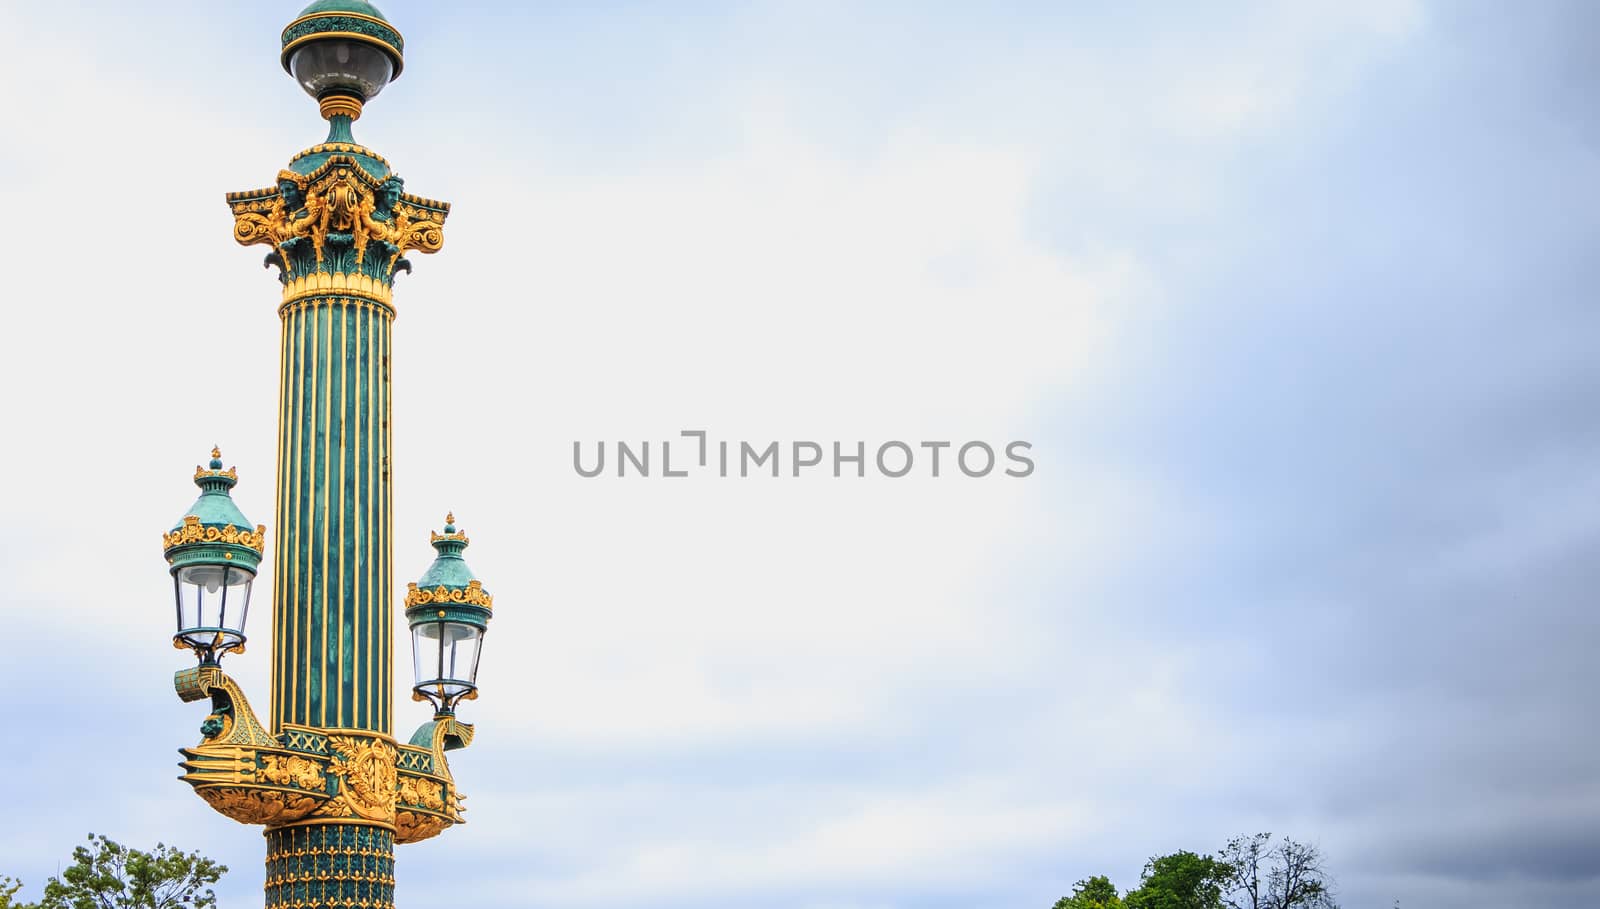 Lampposts in Place de la Concorde in Paris, France